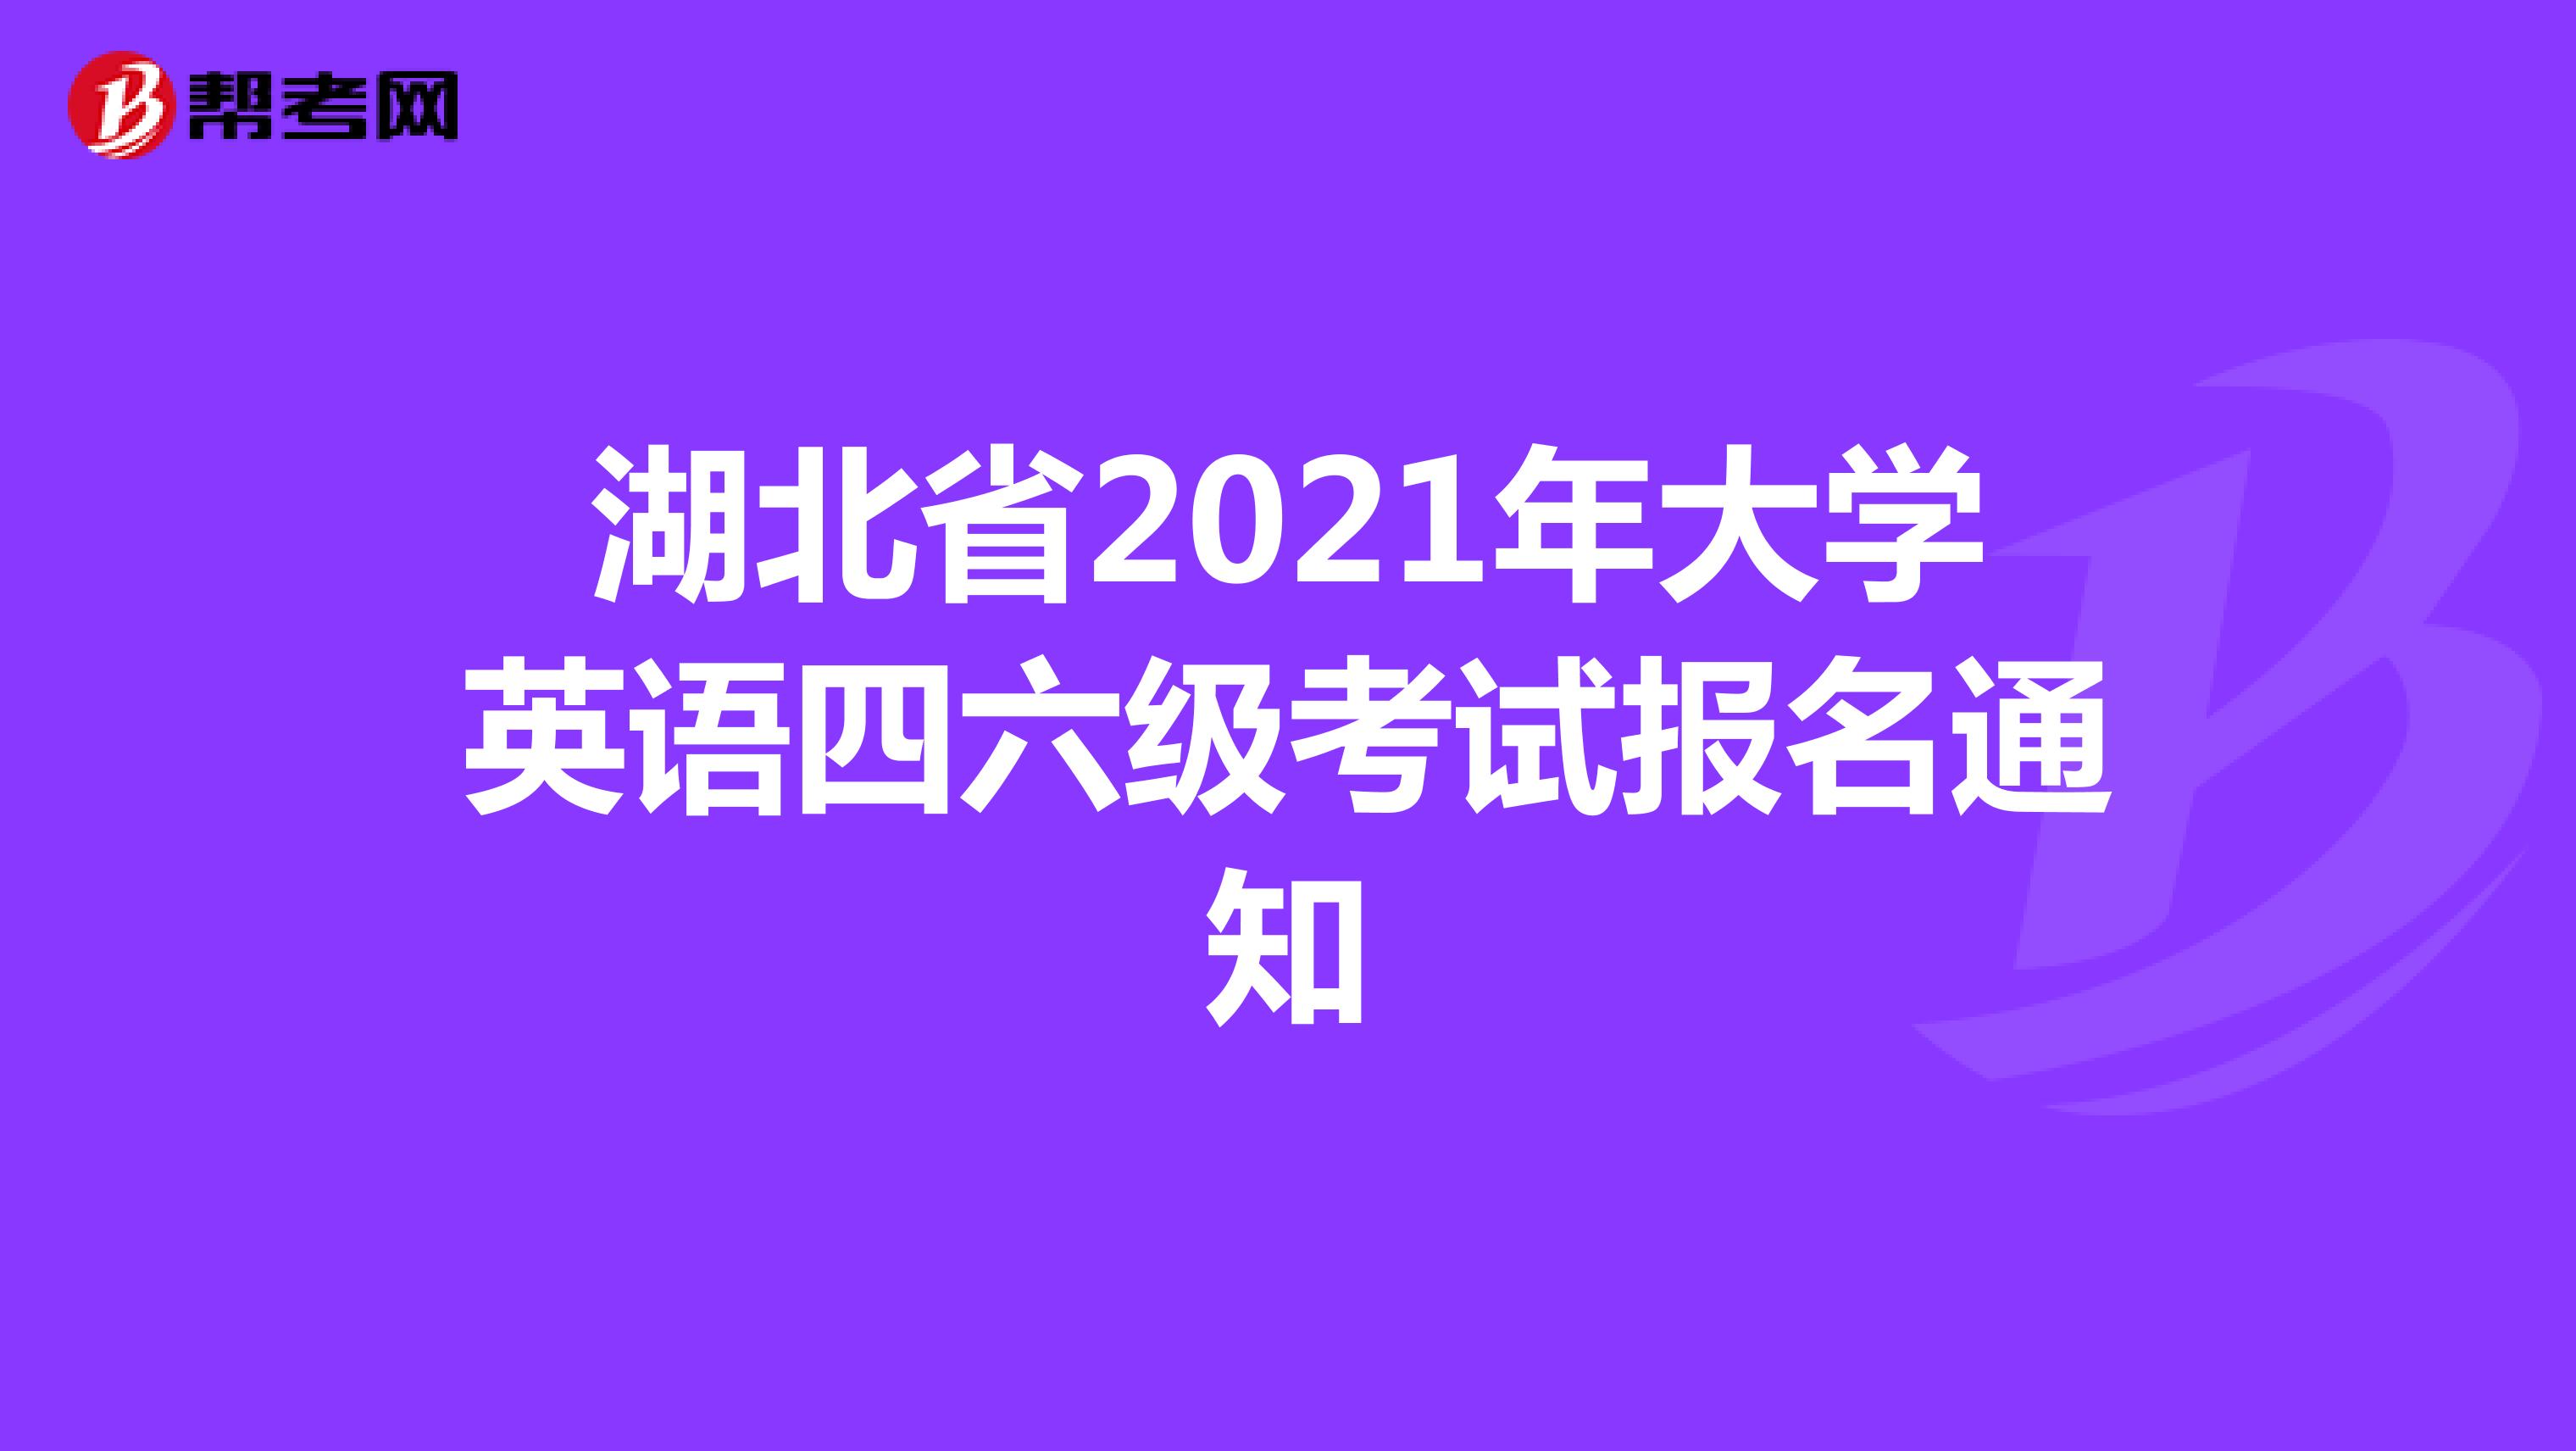 湖北省2021年大学英语四六级考试报名通知